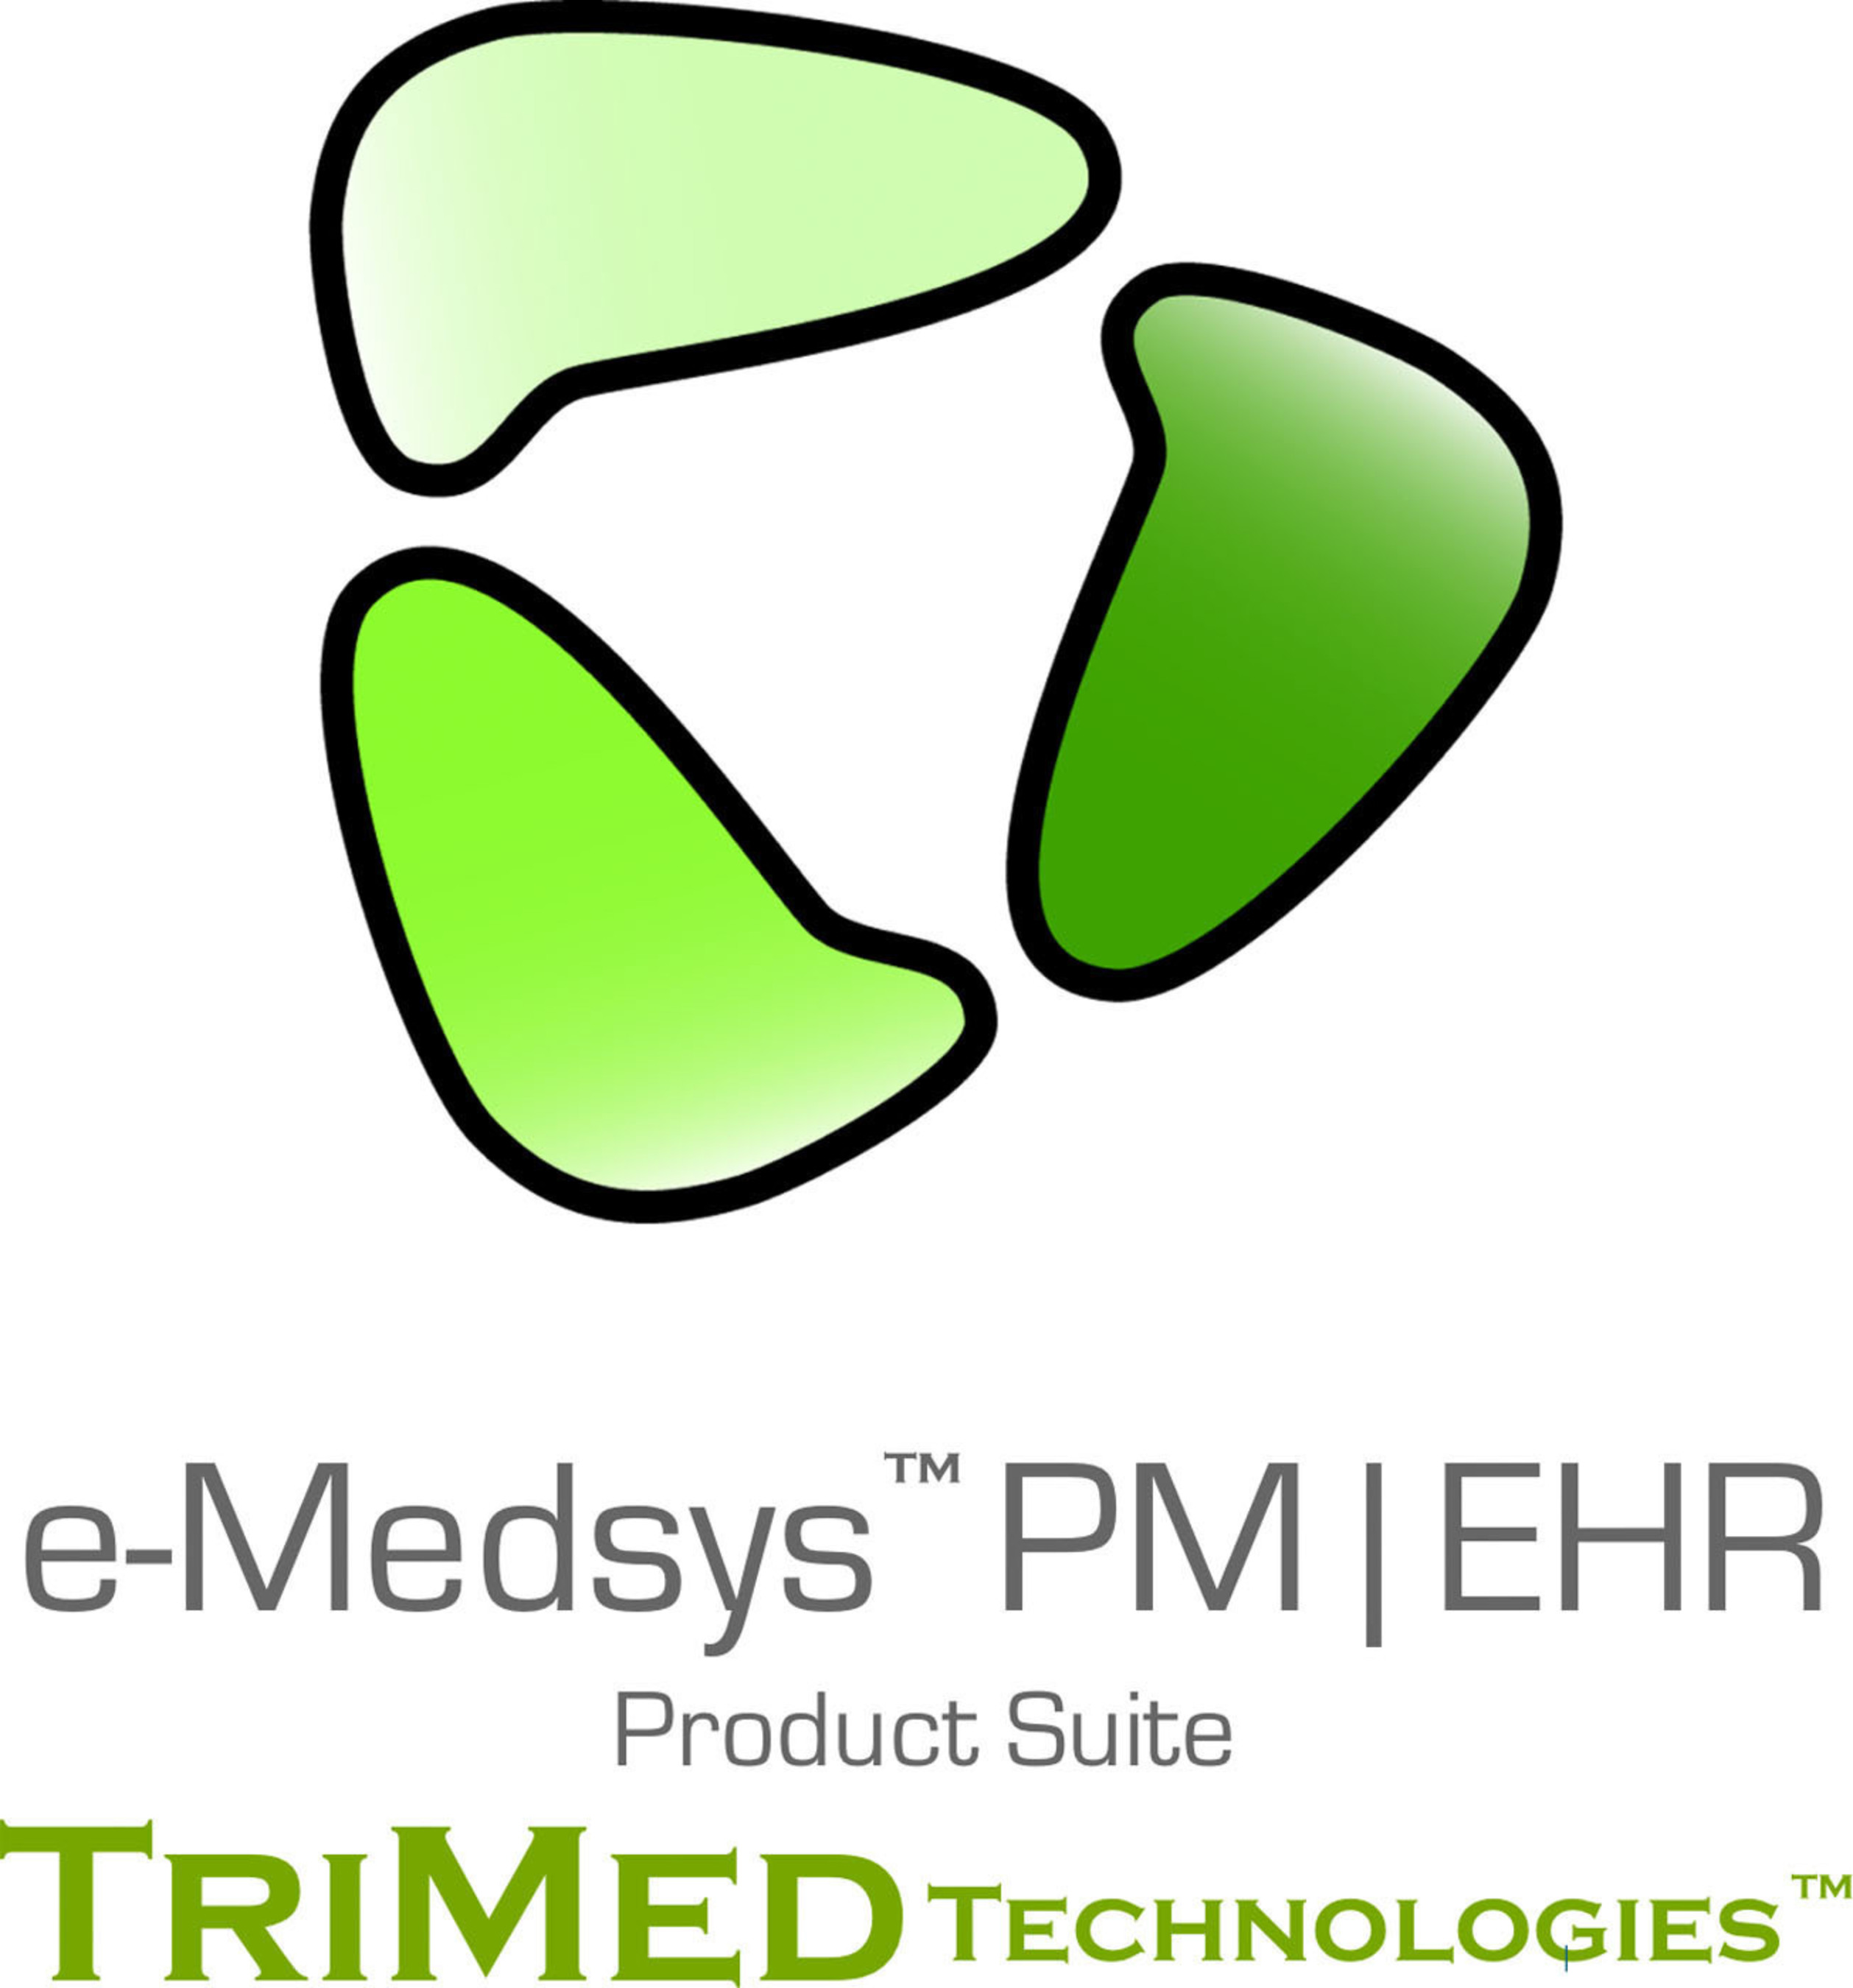 TriMed Technologies' e-Medsys EHR. (PRNewsFoto/TriMed Technologies) (PRNewsFoto/TRIMED TECHNOLOGIES)